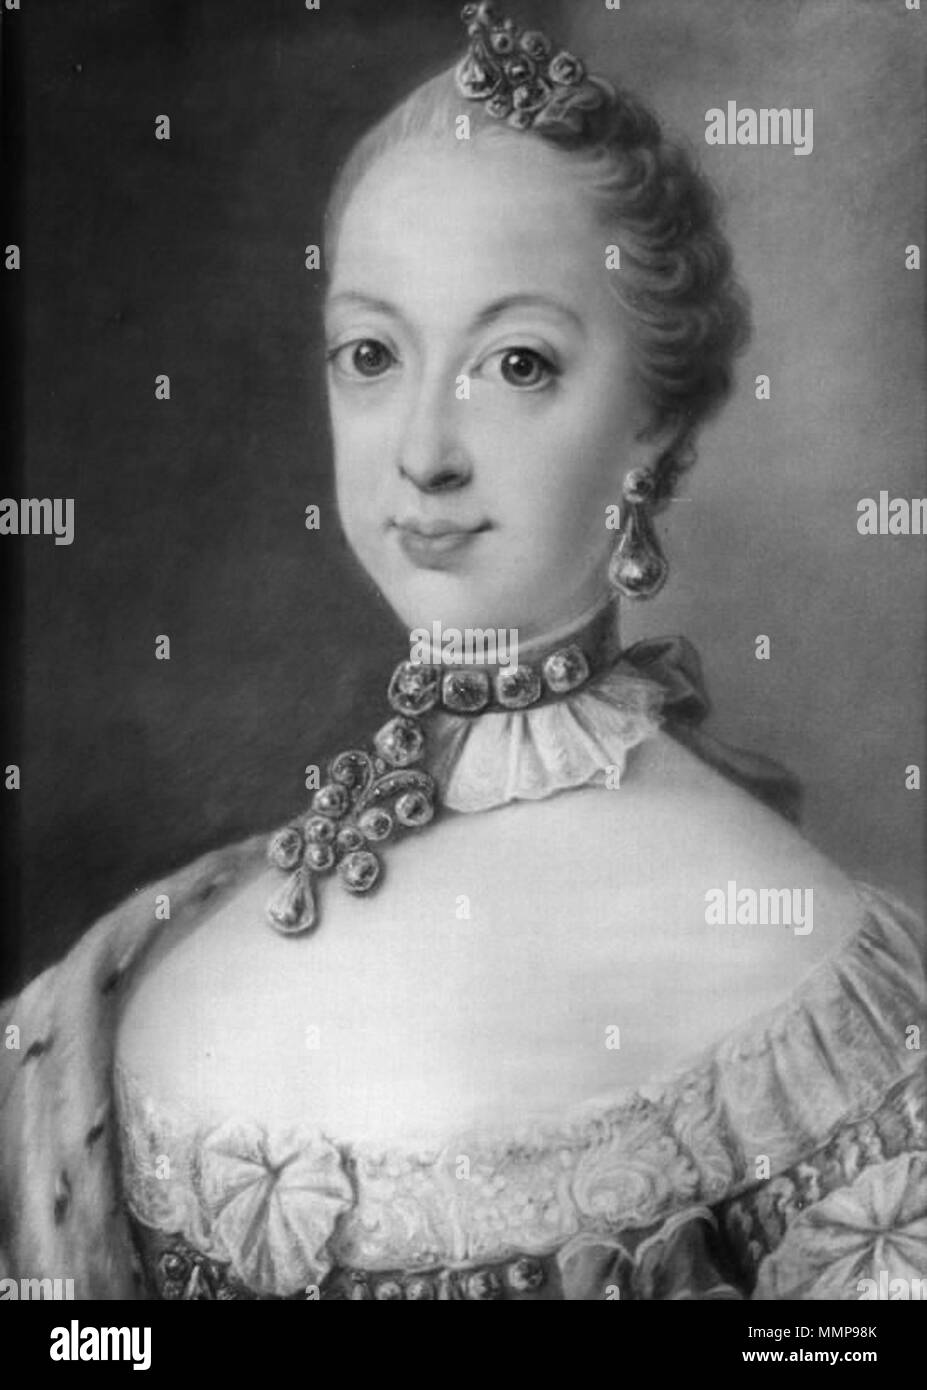 Dansk: Dronning Sophie Magdalene af Sverige, som prinsesse, 1741-1776 English: Portrait of Sophia Magdalena of Denmark (1746-1813) . 18th - Sophia Magdalena of Denmark, SMK Stock Photo - Alamy